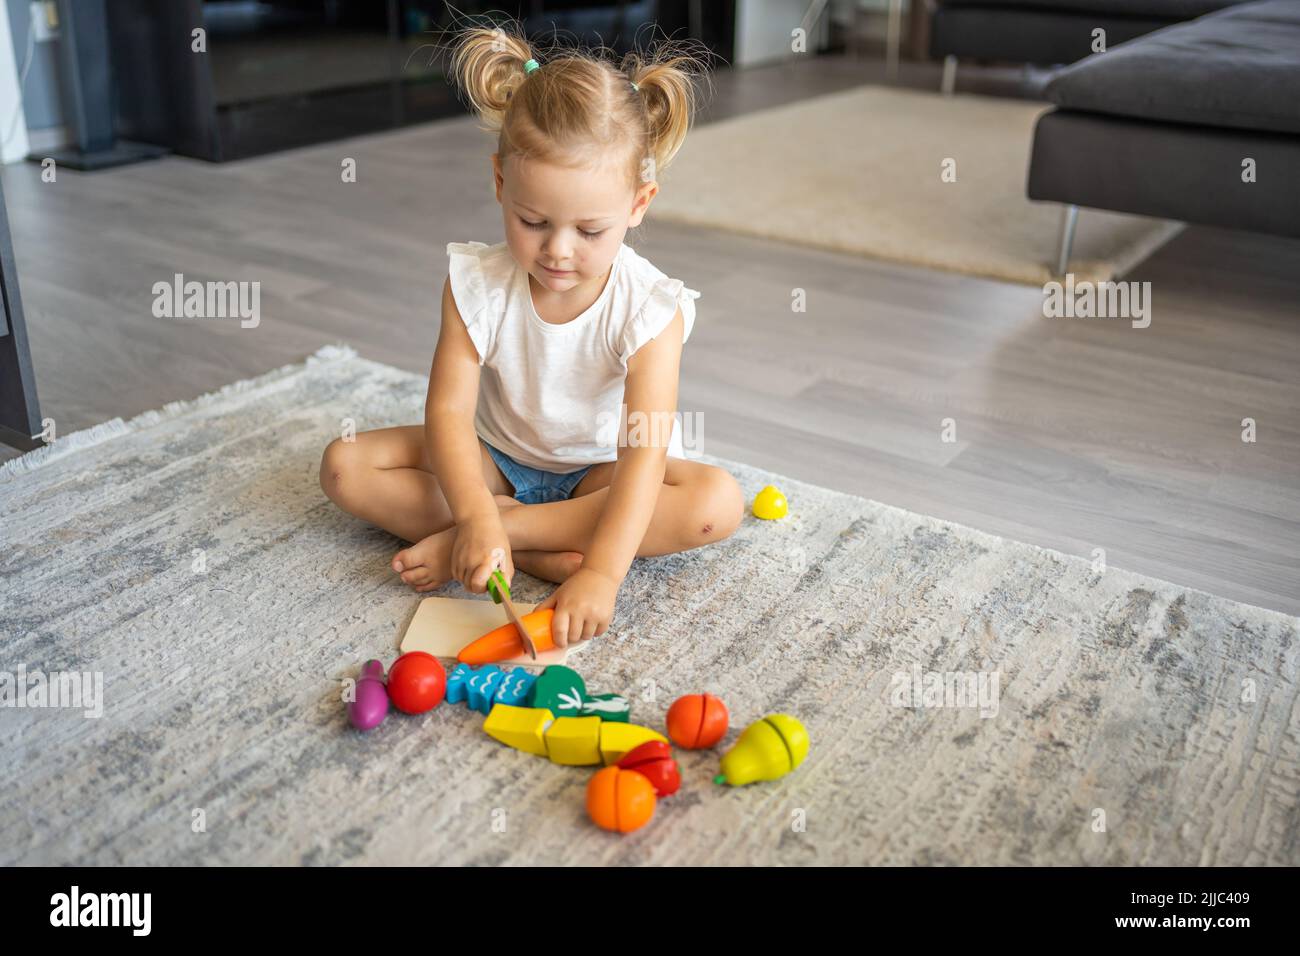 Linda niña pequeña jugando en casa con juguetes de madera ecológicos. Niño feliz cortando verduras y frutas con cuchillo de juguete. El niño jugando educativo Foto de stock